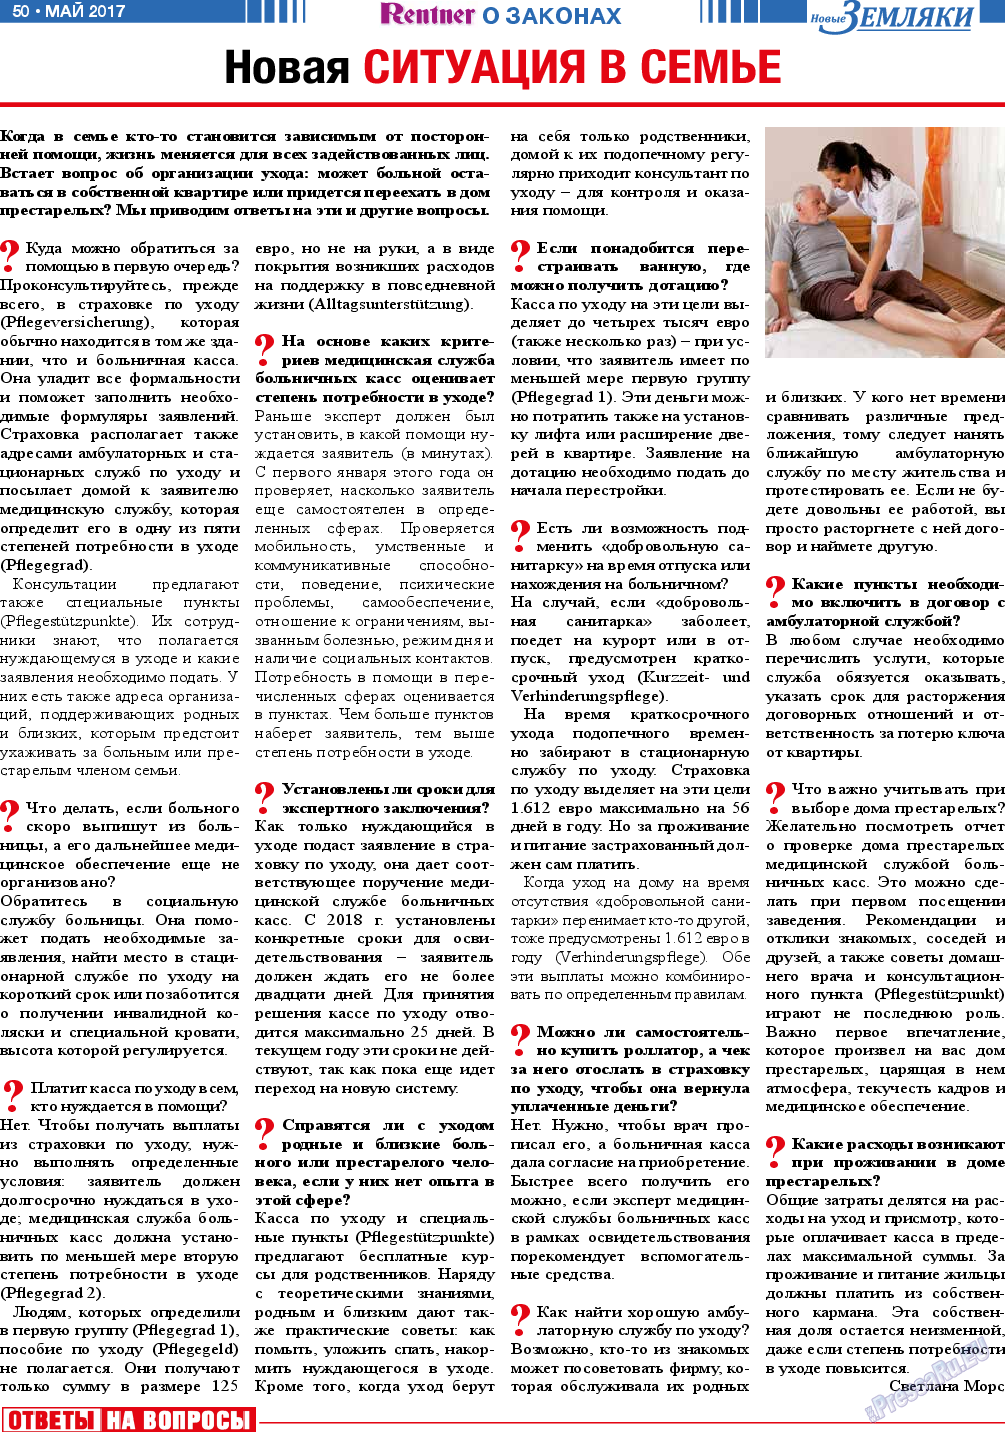 Новые Земляки, газета. 2017 №5 стр.50